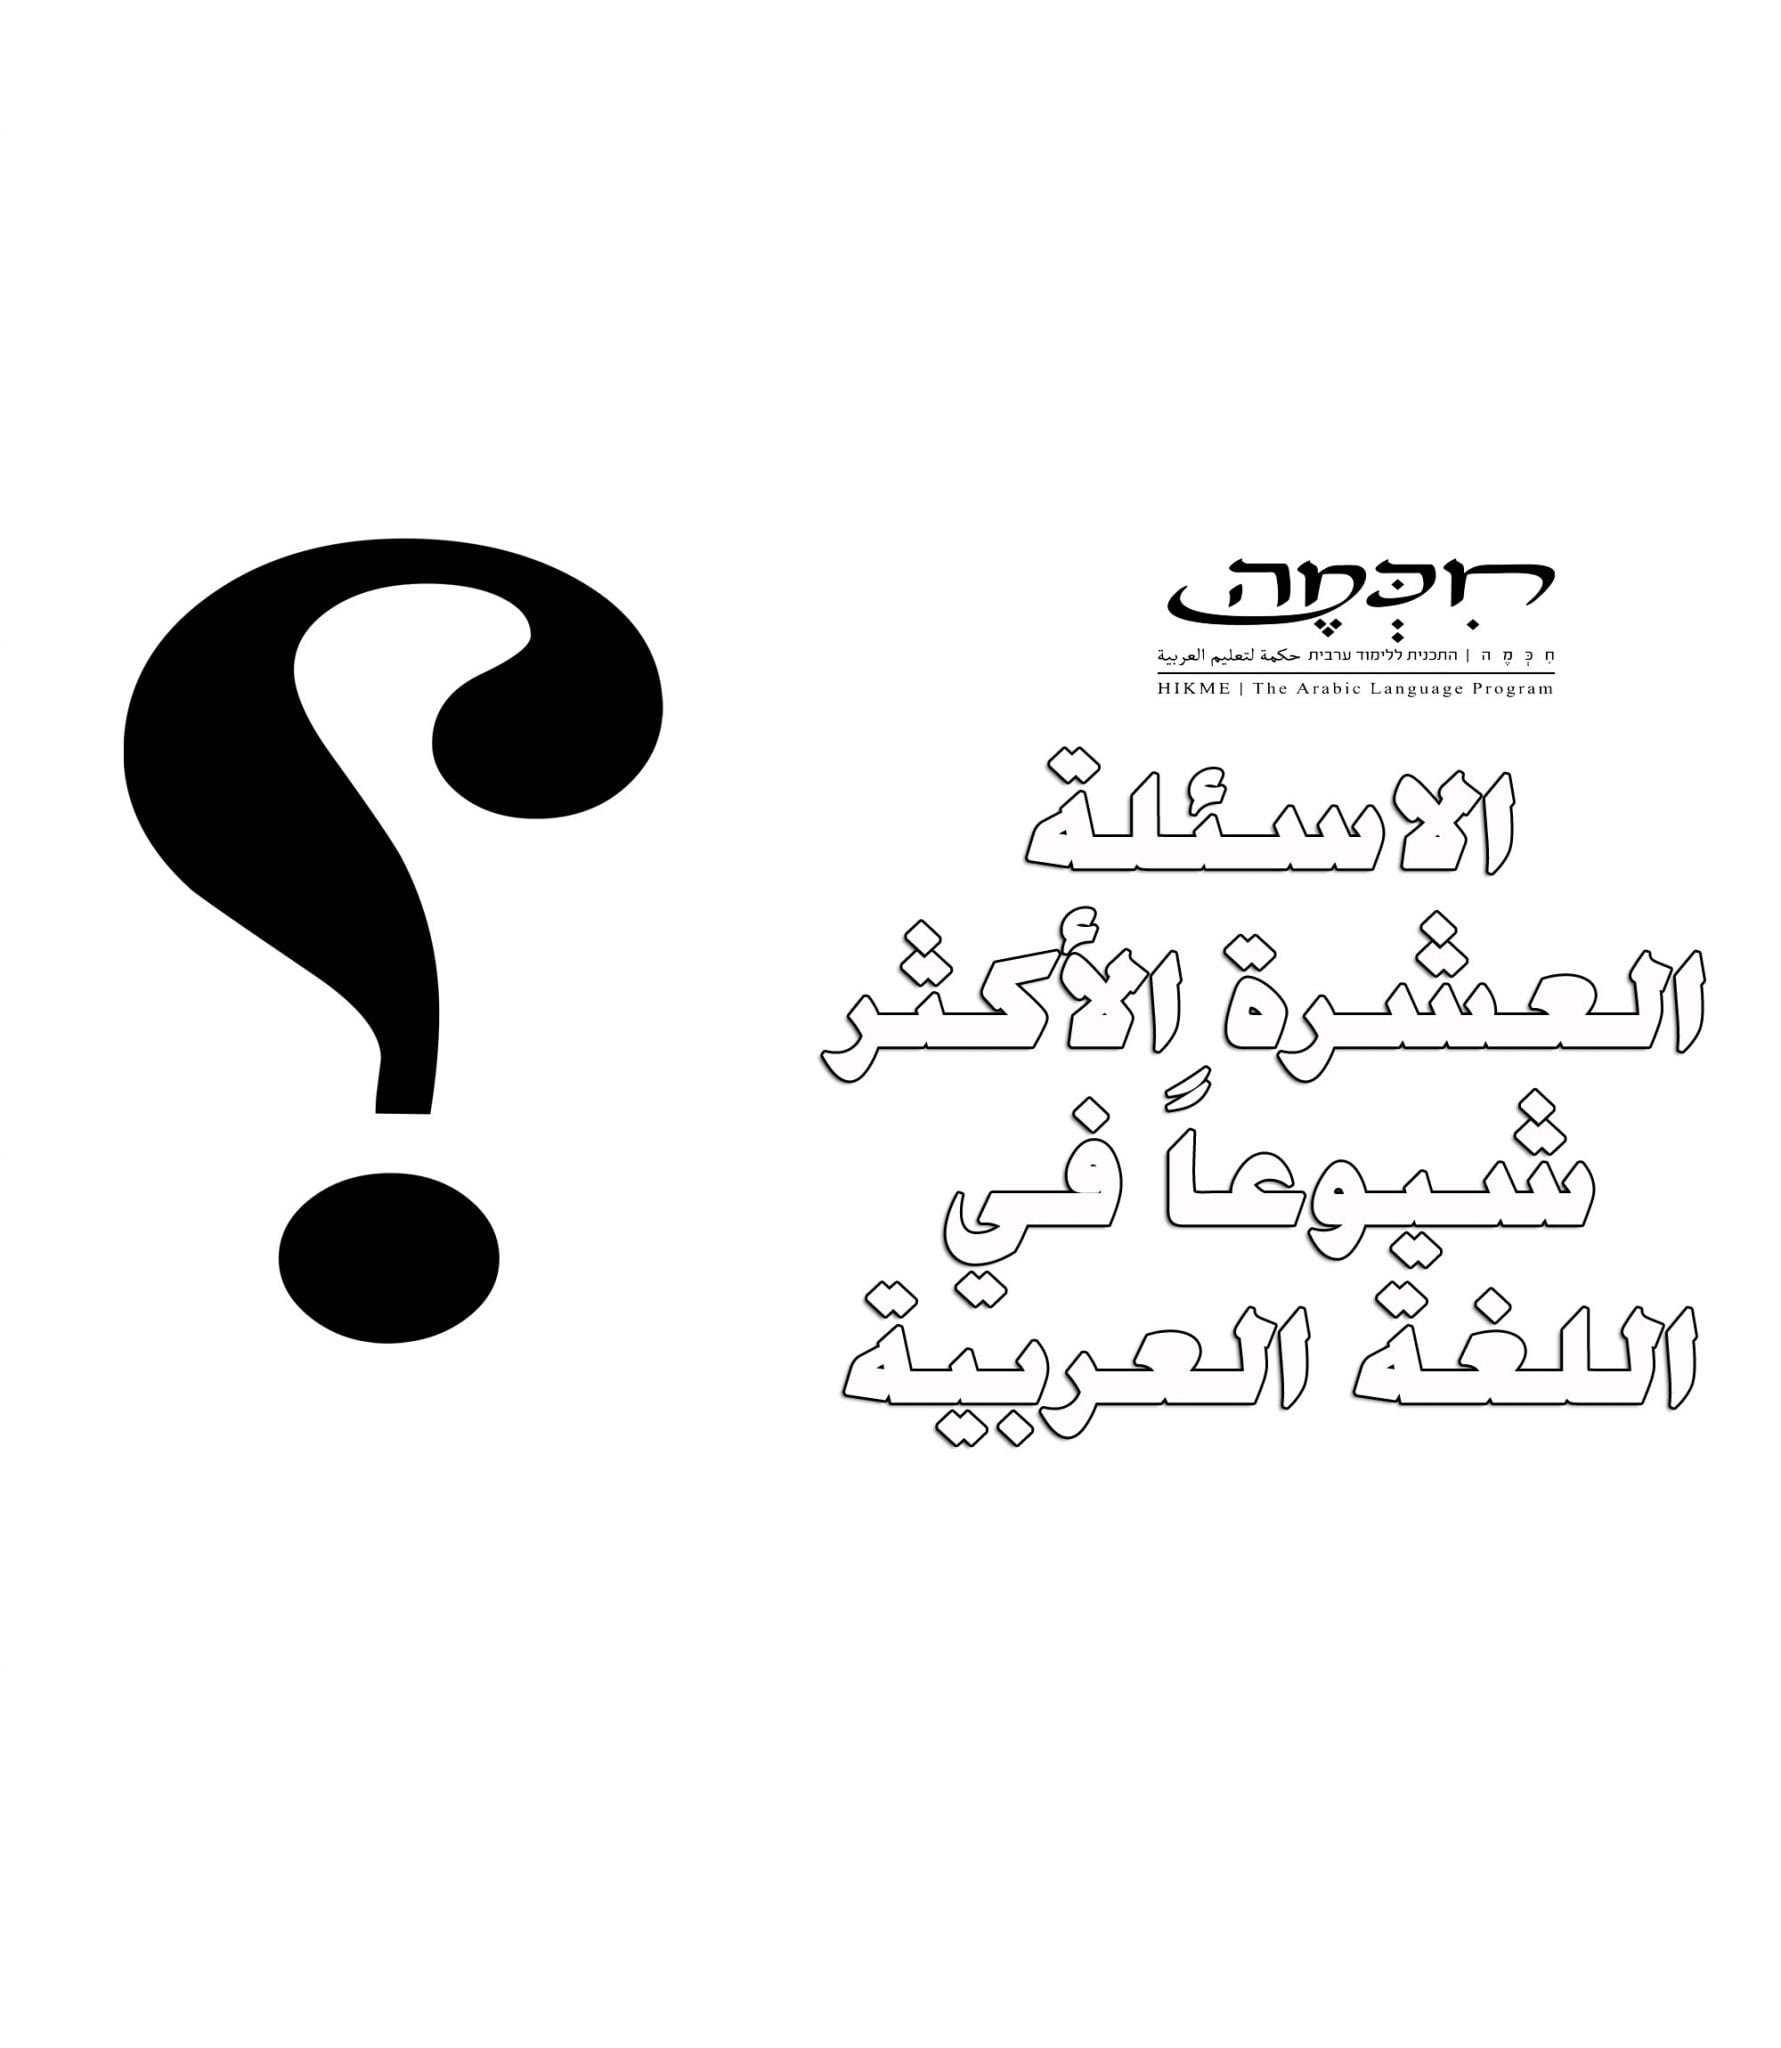 10 השאלות הנפוצות בערבית מדוברת